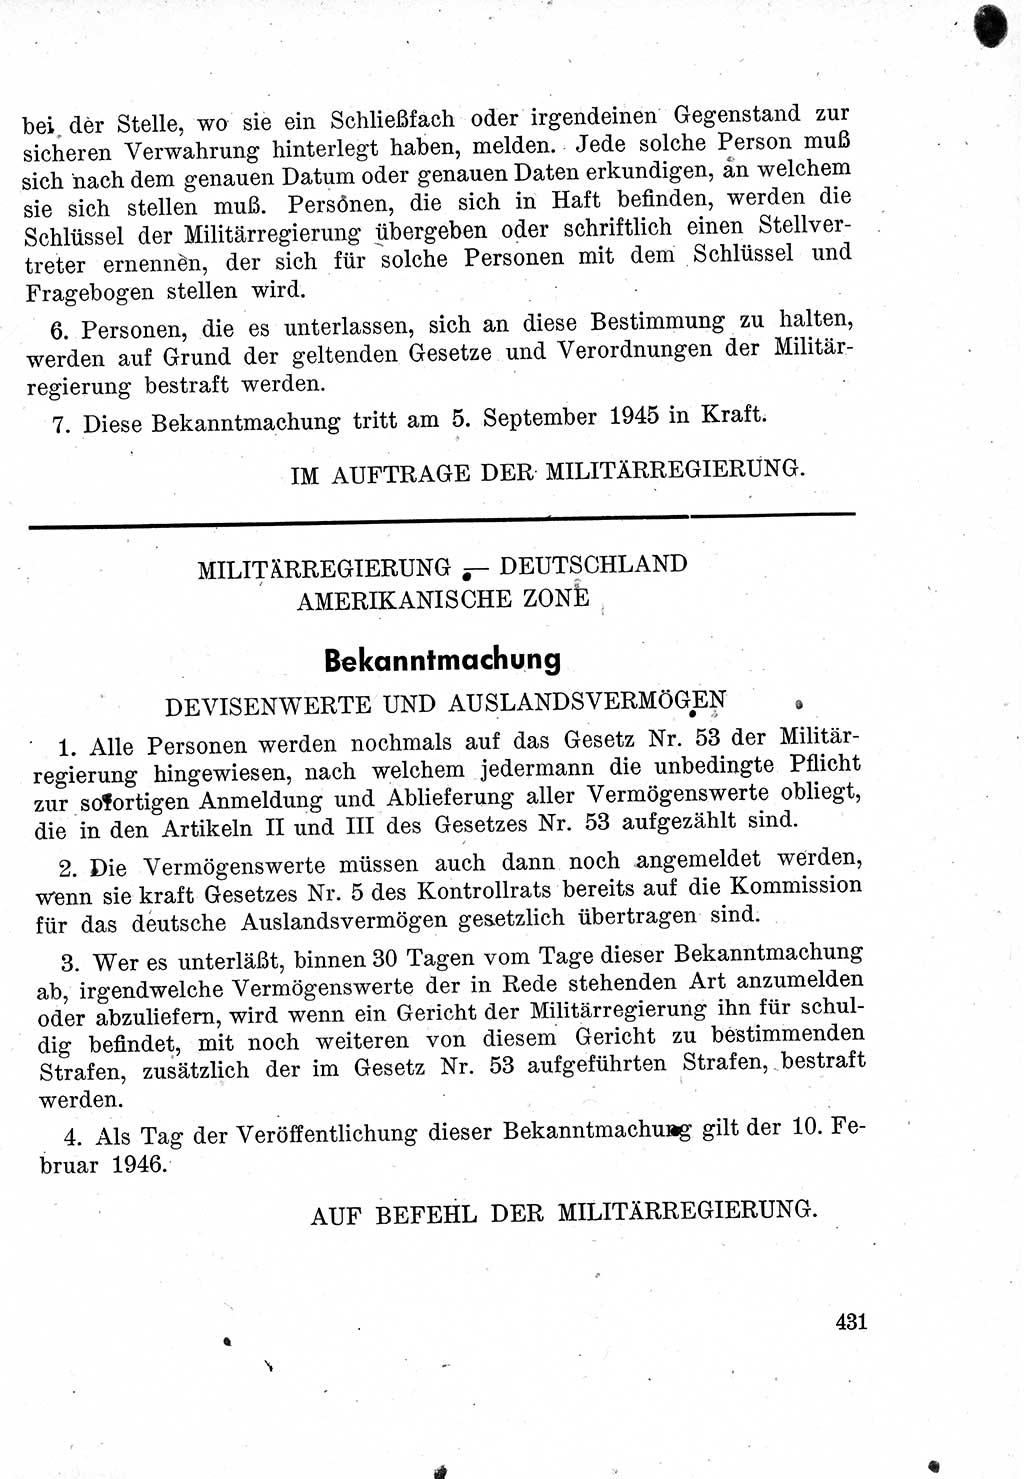 Das Recht der Besatzungsmacht (Deutschland), Proklamationen, Deklerationen, Verordnungen, Gesetze und Bekanntmachungen 1947, Seite 431 (R. Bes. Dtl. 1947, S. 431)